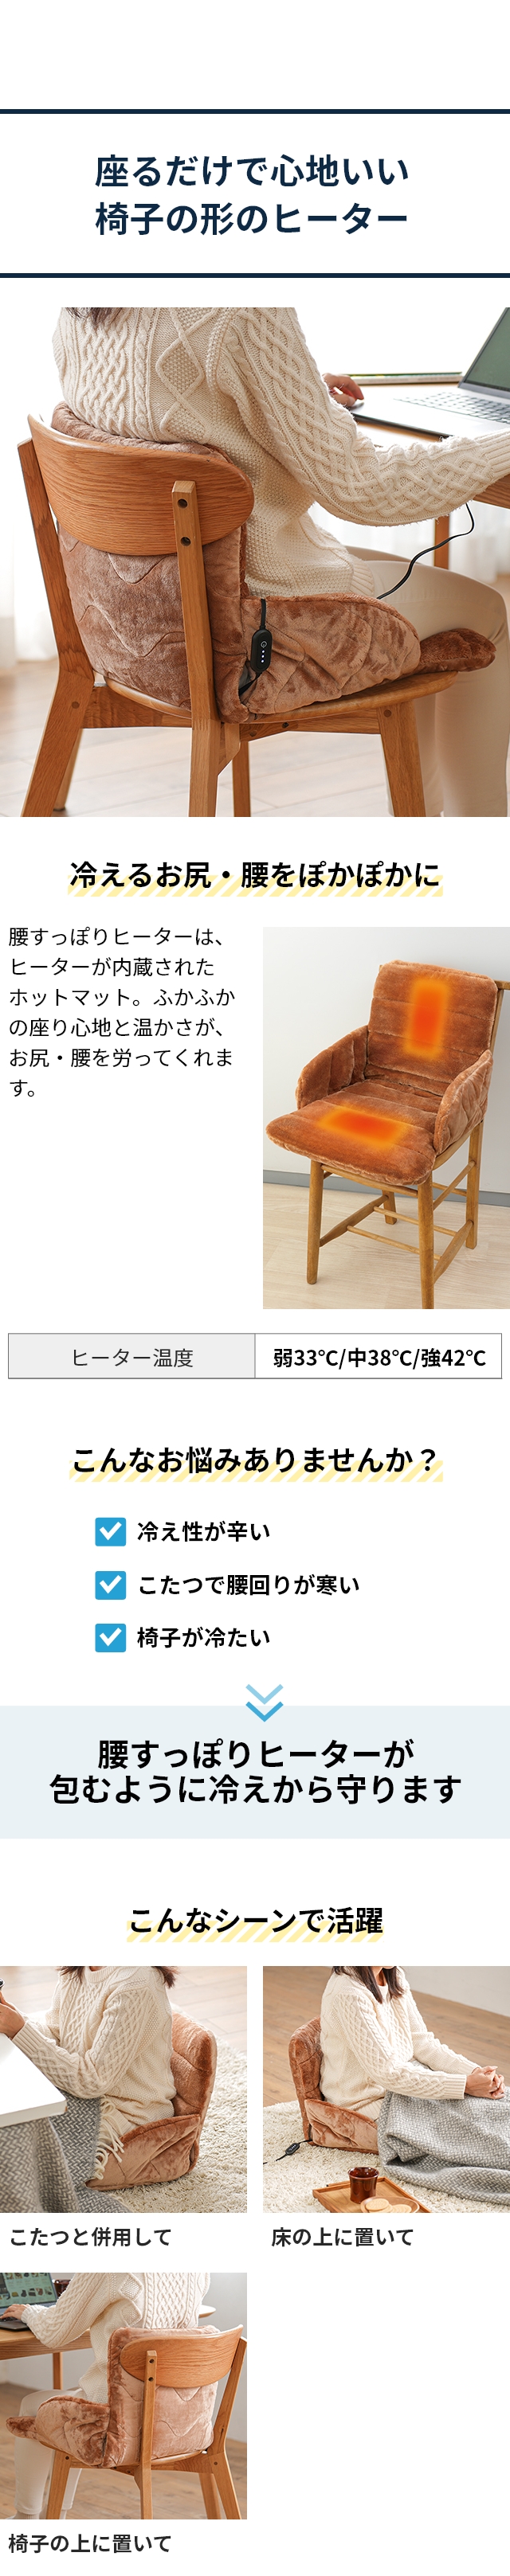 zenken（ゼンケン） 腰すっぽりヒーター 低電力タイプ ZR-05SH：座るだけで心地いい
椅子の形のヒーター